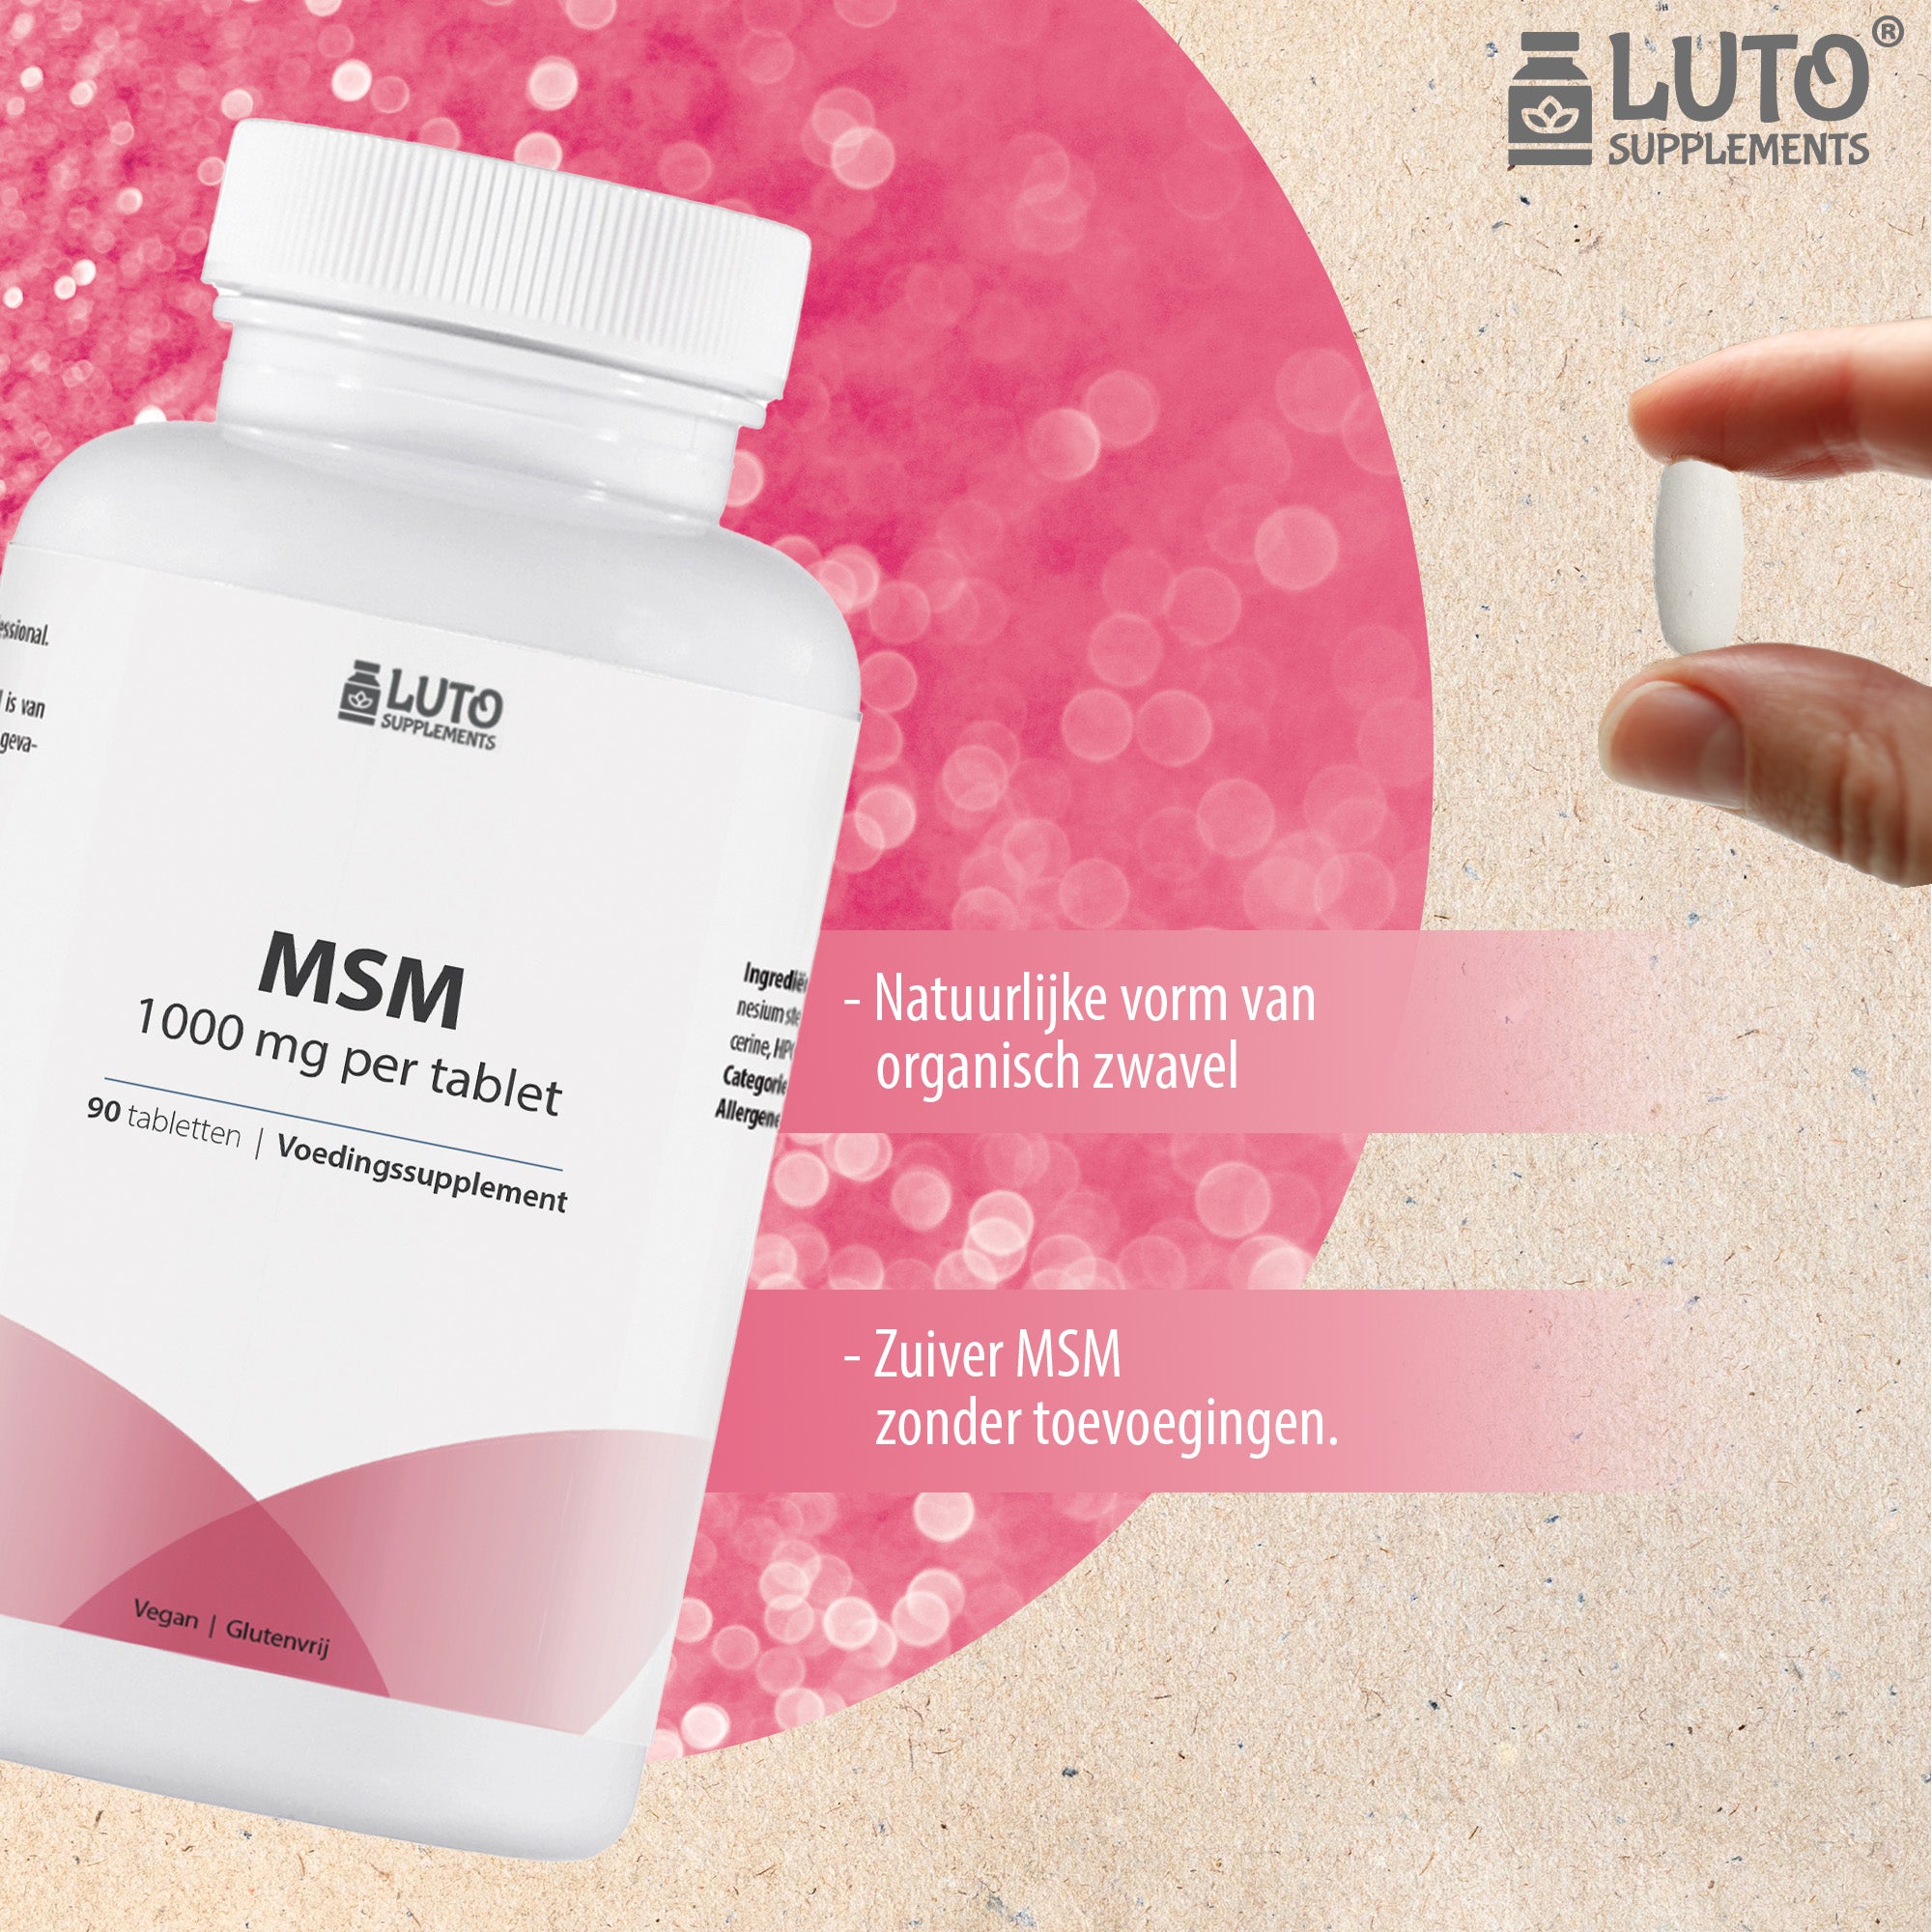 MSM 1000 mg - 90 tabletten - zonder toevoegingen - 3 maanden voorraad - Natuurlijke vorm organisch zwavel - veganistisch - Luto Supplements